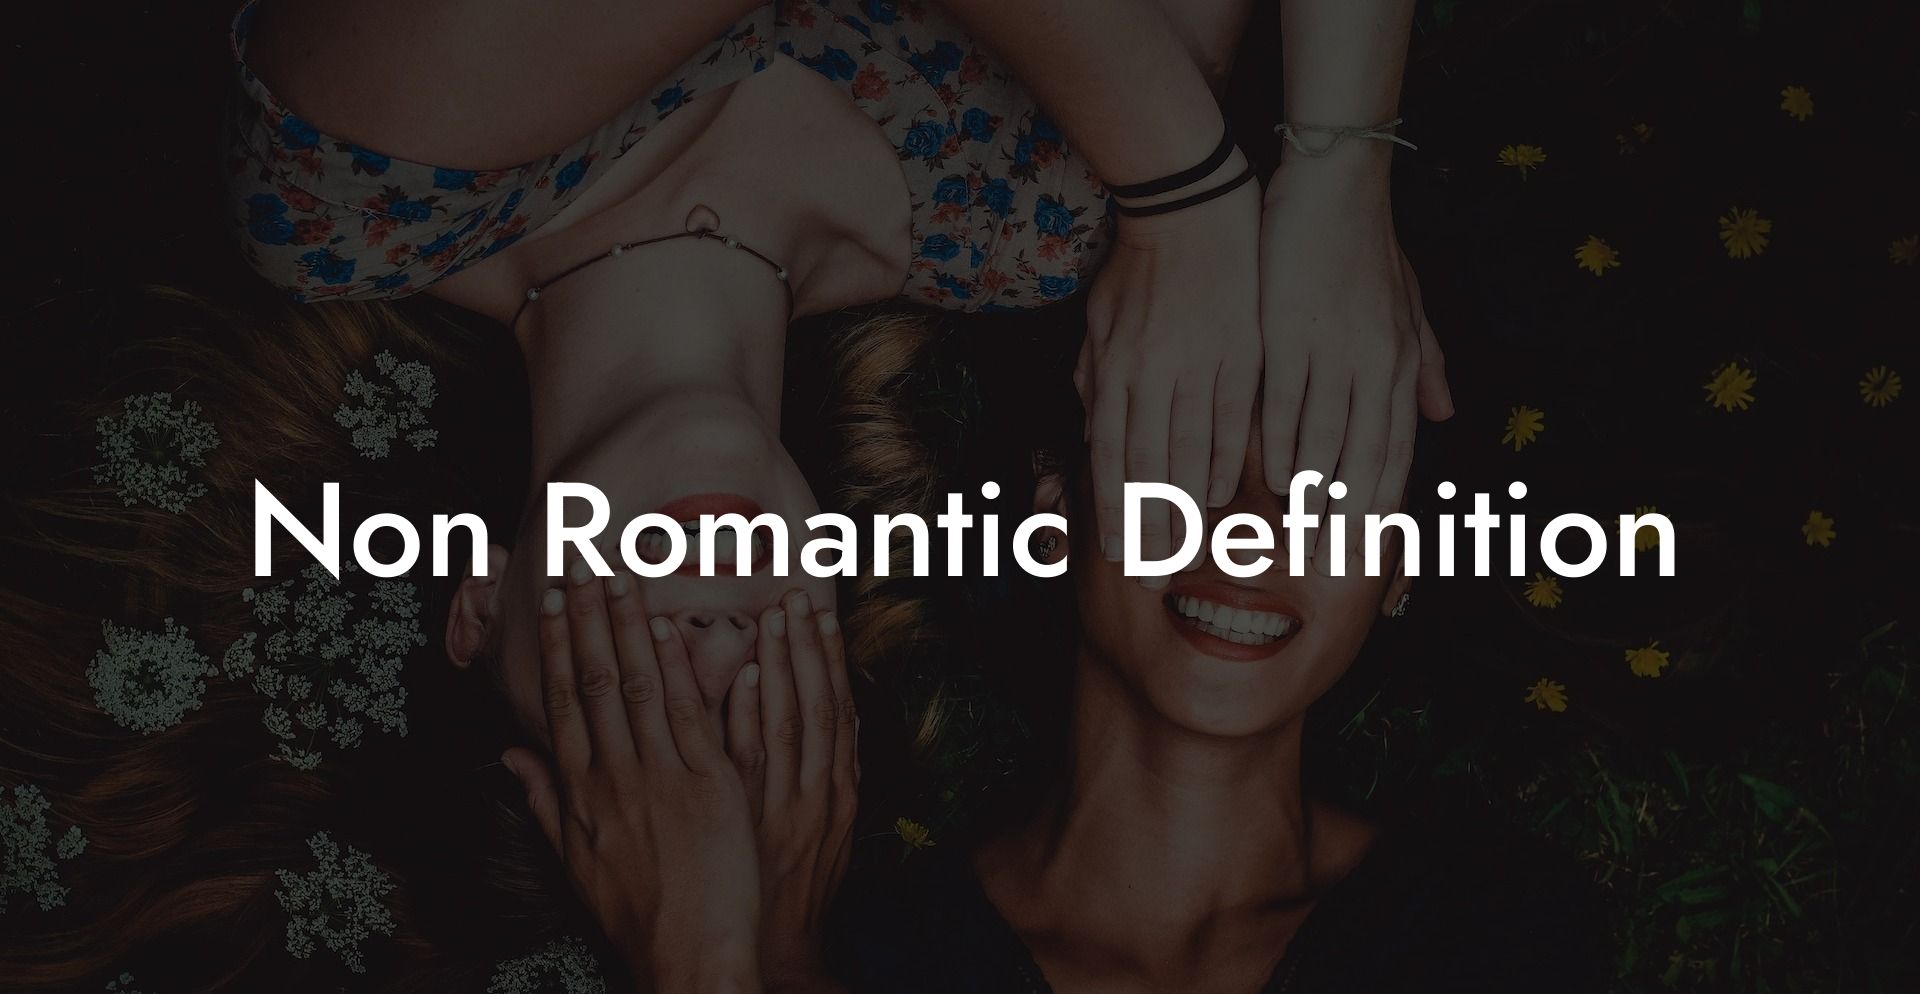 Non Romantic Definition